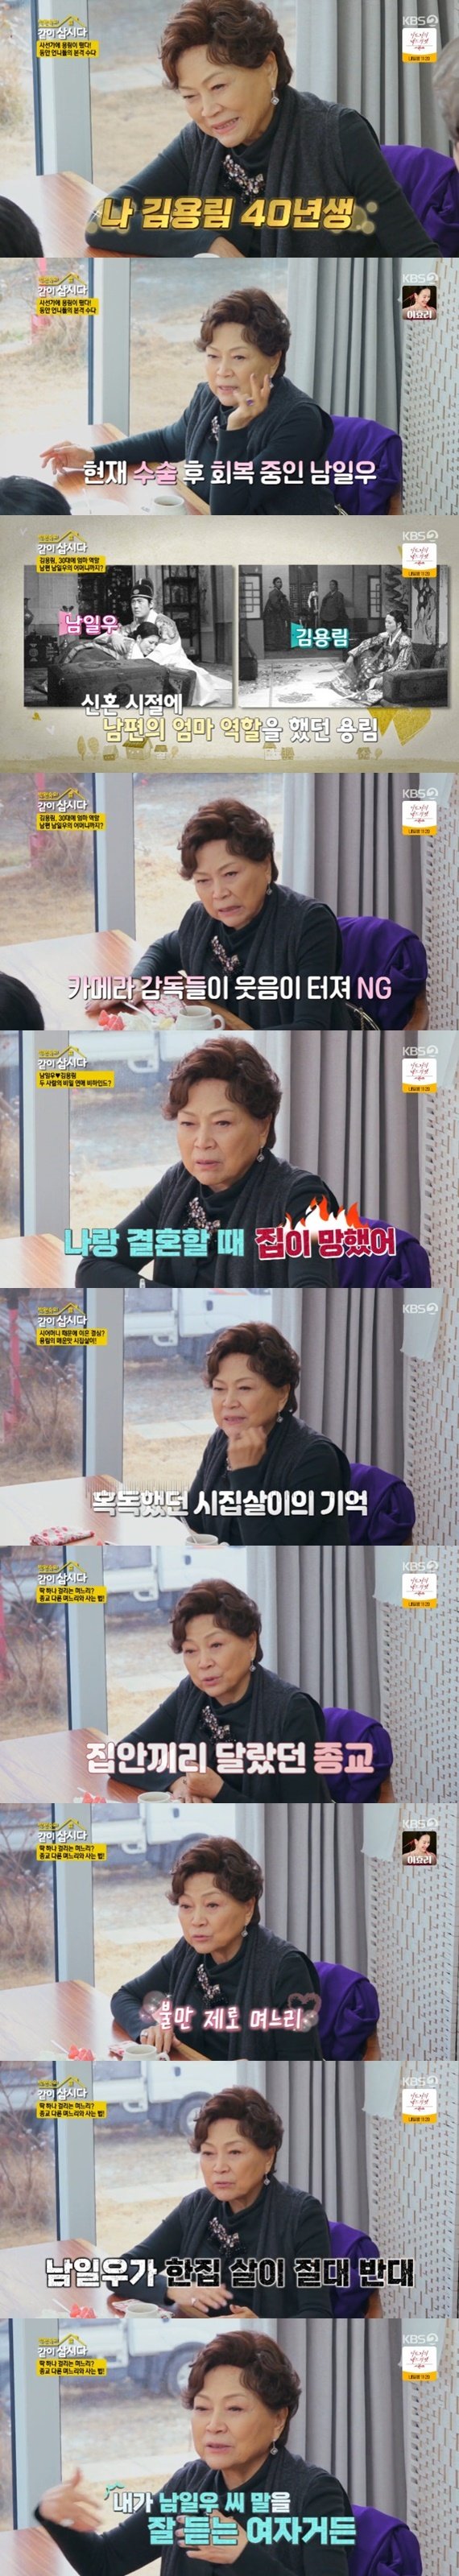 김용림 신혼 때 ♥남일우 엄마 역할…제작진 웃어서 NG [RE:TV]